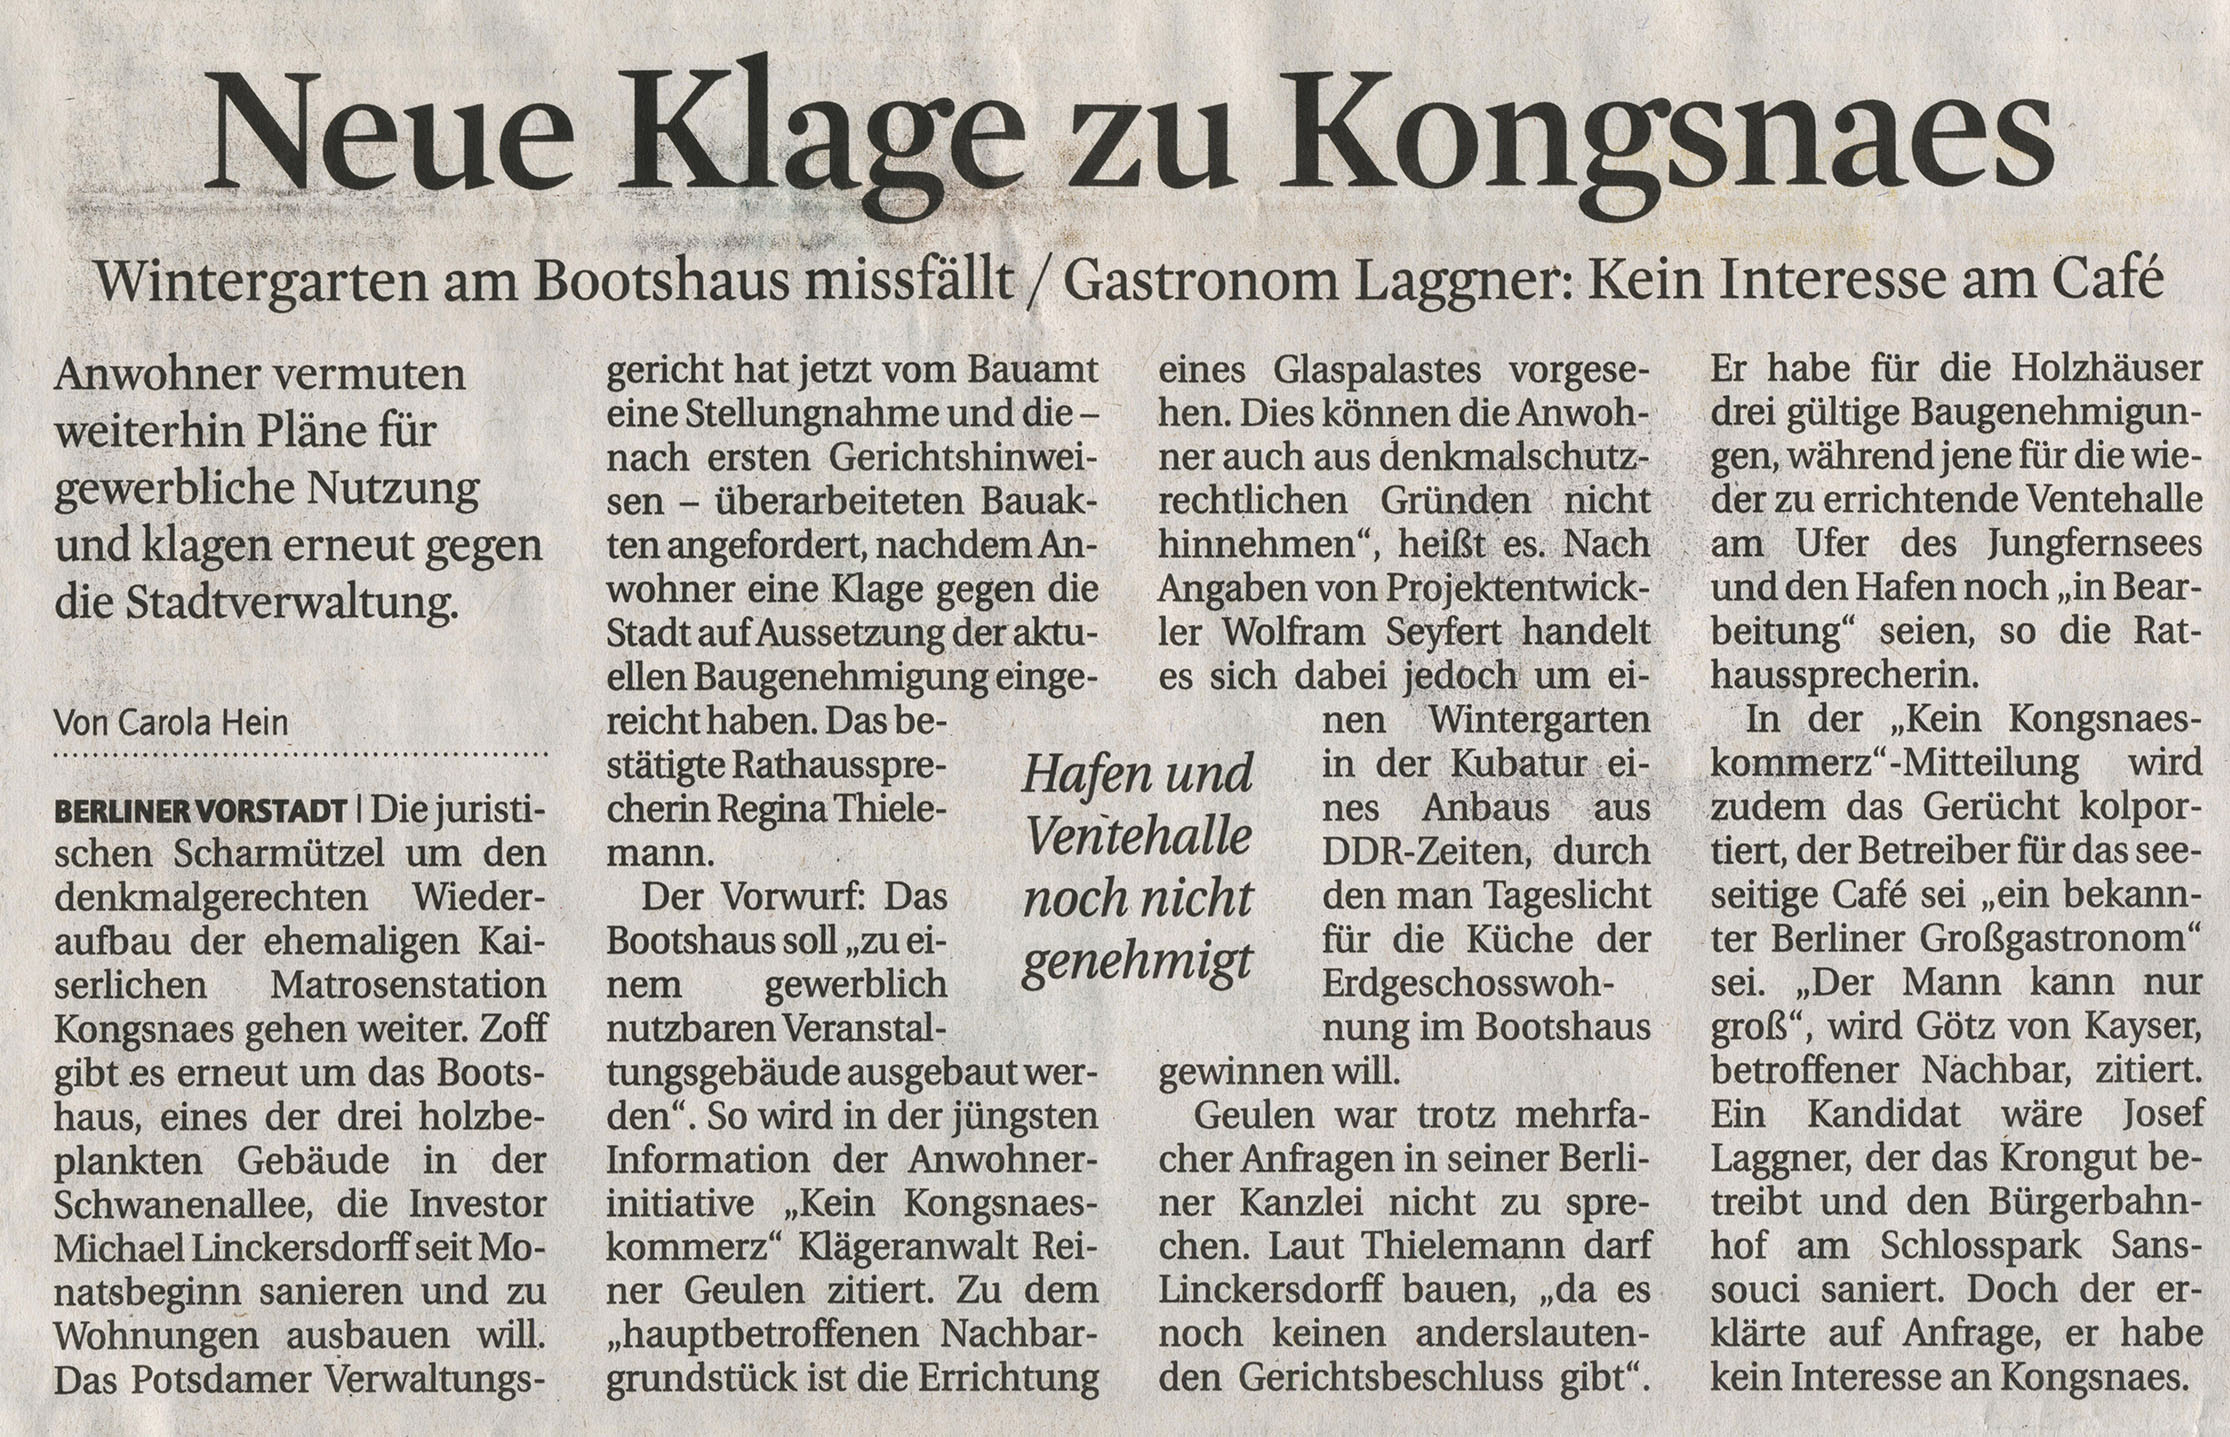 Mrkische Allgemeine Zeitung - 12.03.2012